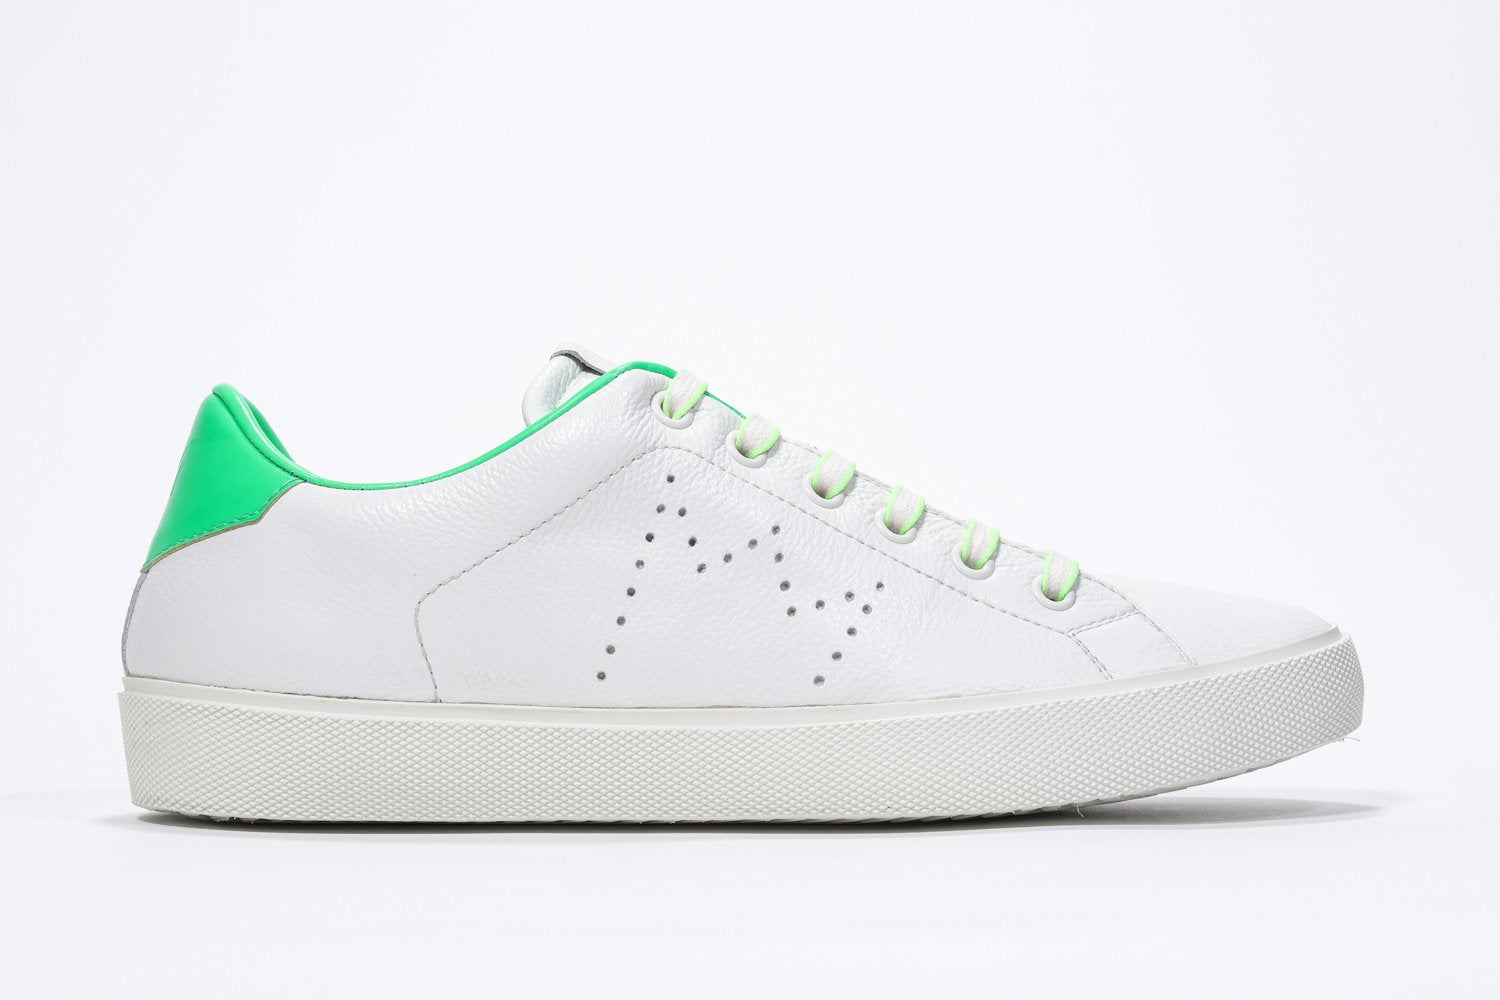 Profilo laterale di BASSE  sneaker  bianco con dettagli verde neon e logo della corona traforato sulla tomaia. Tomaia in pelle e suola in gomma bianca.